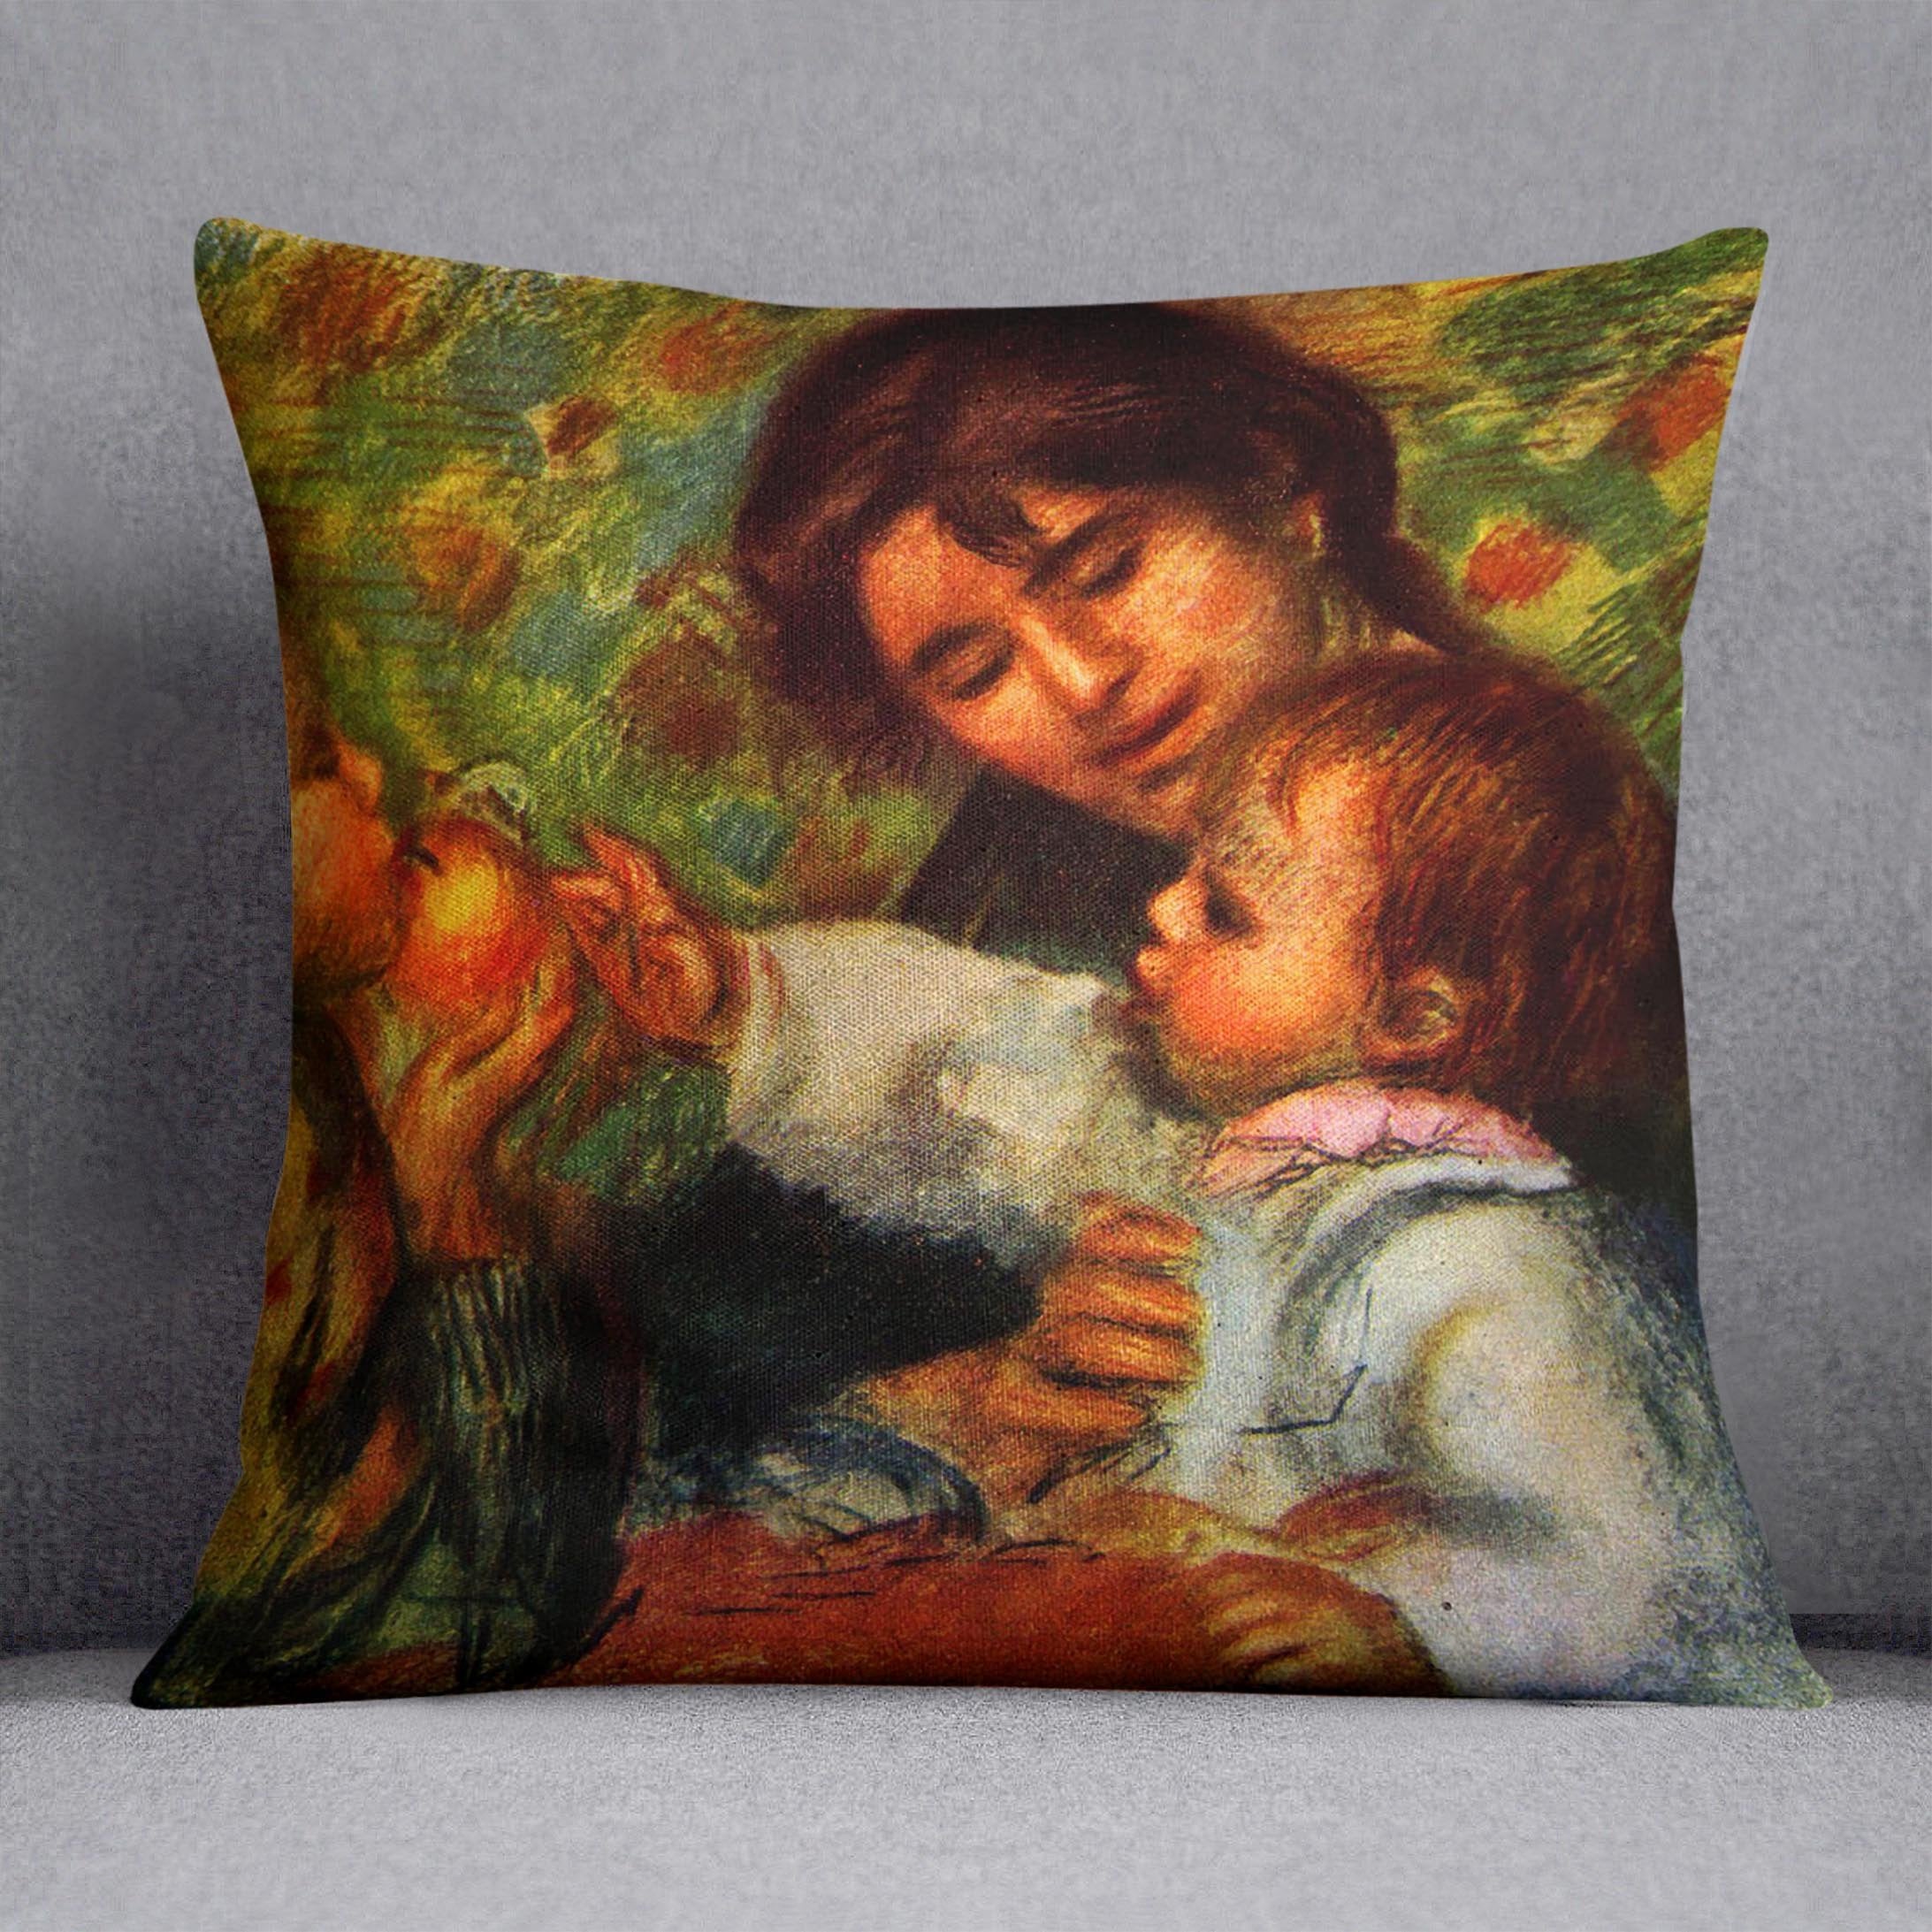 Jean Renoir and Gabrielle by Renoir Throw Pillow